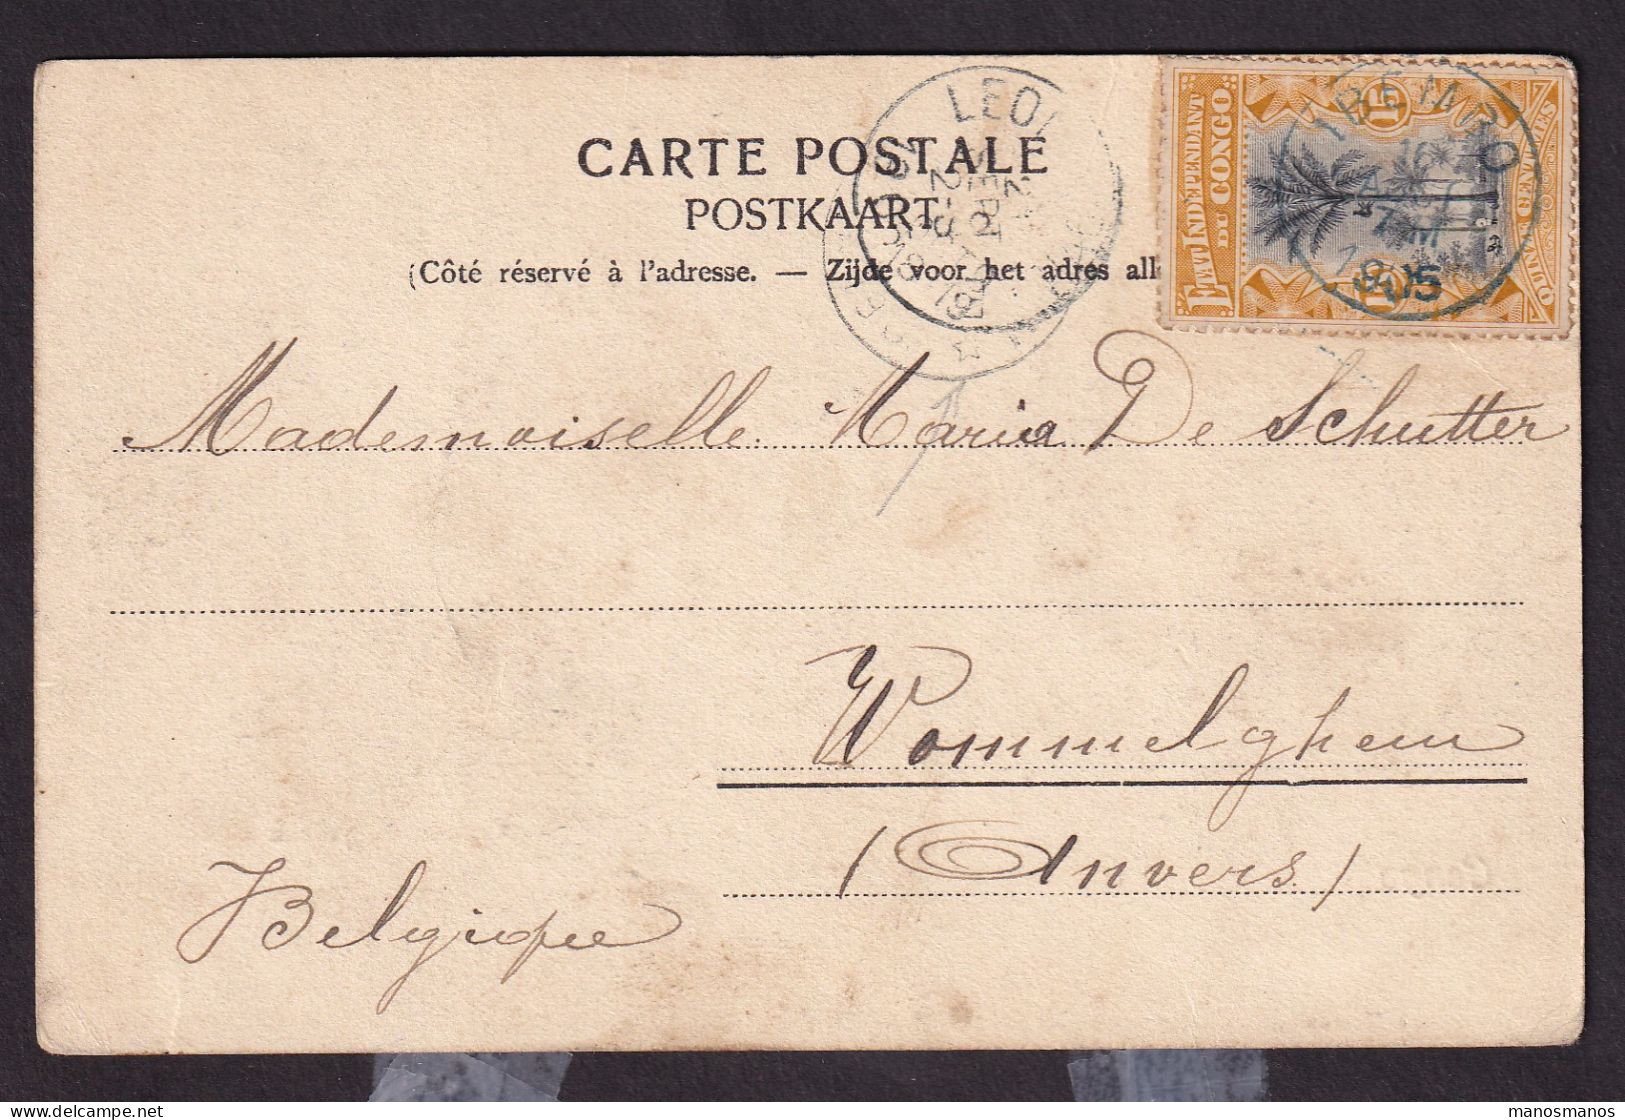 DDGG 012 - Carte-Vue TP Mols 15 C  Etat Indépendant IBEMBO (UELE) 1905 Via LEO Vers Relais WOMMELGHEM Belgique - Briefe U. Dokumente